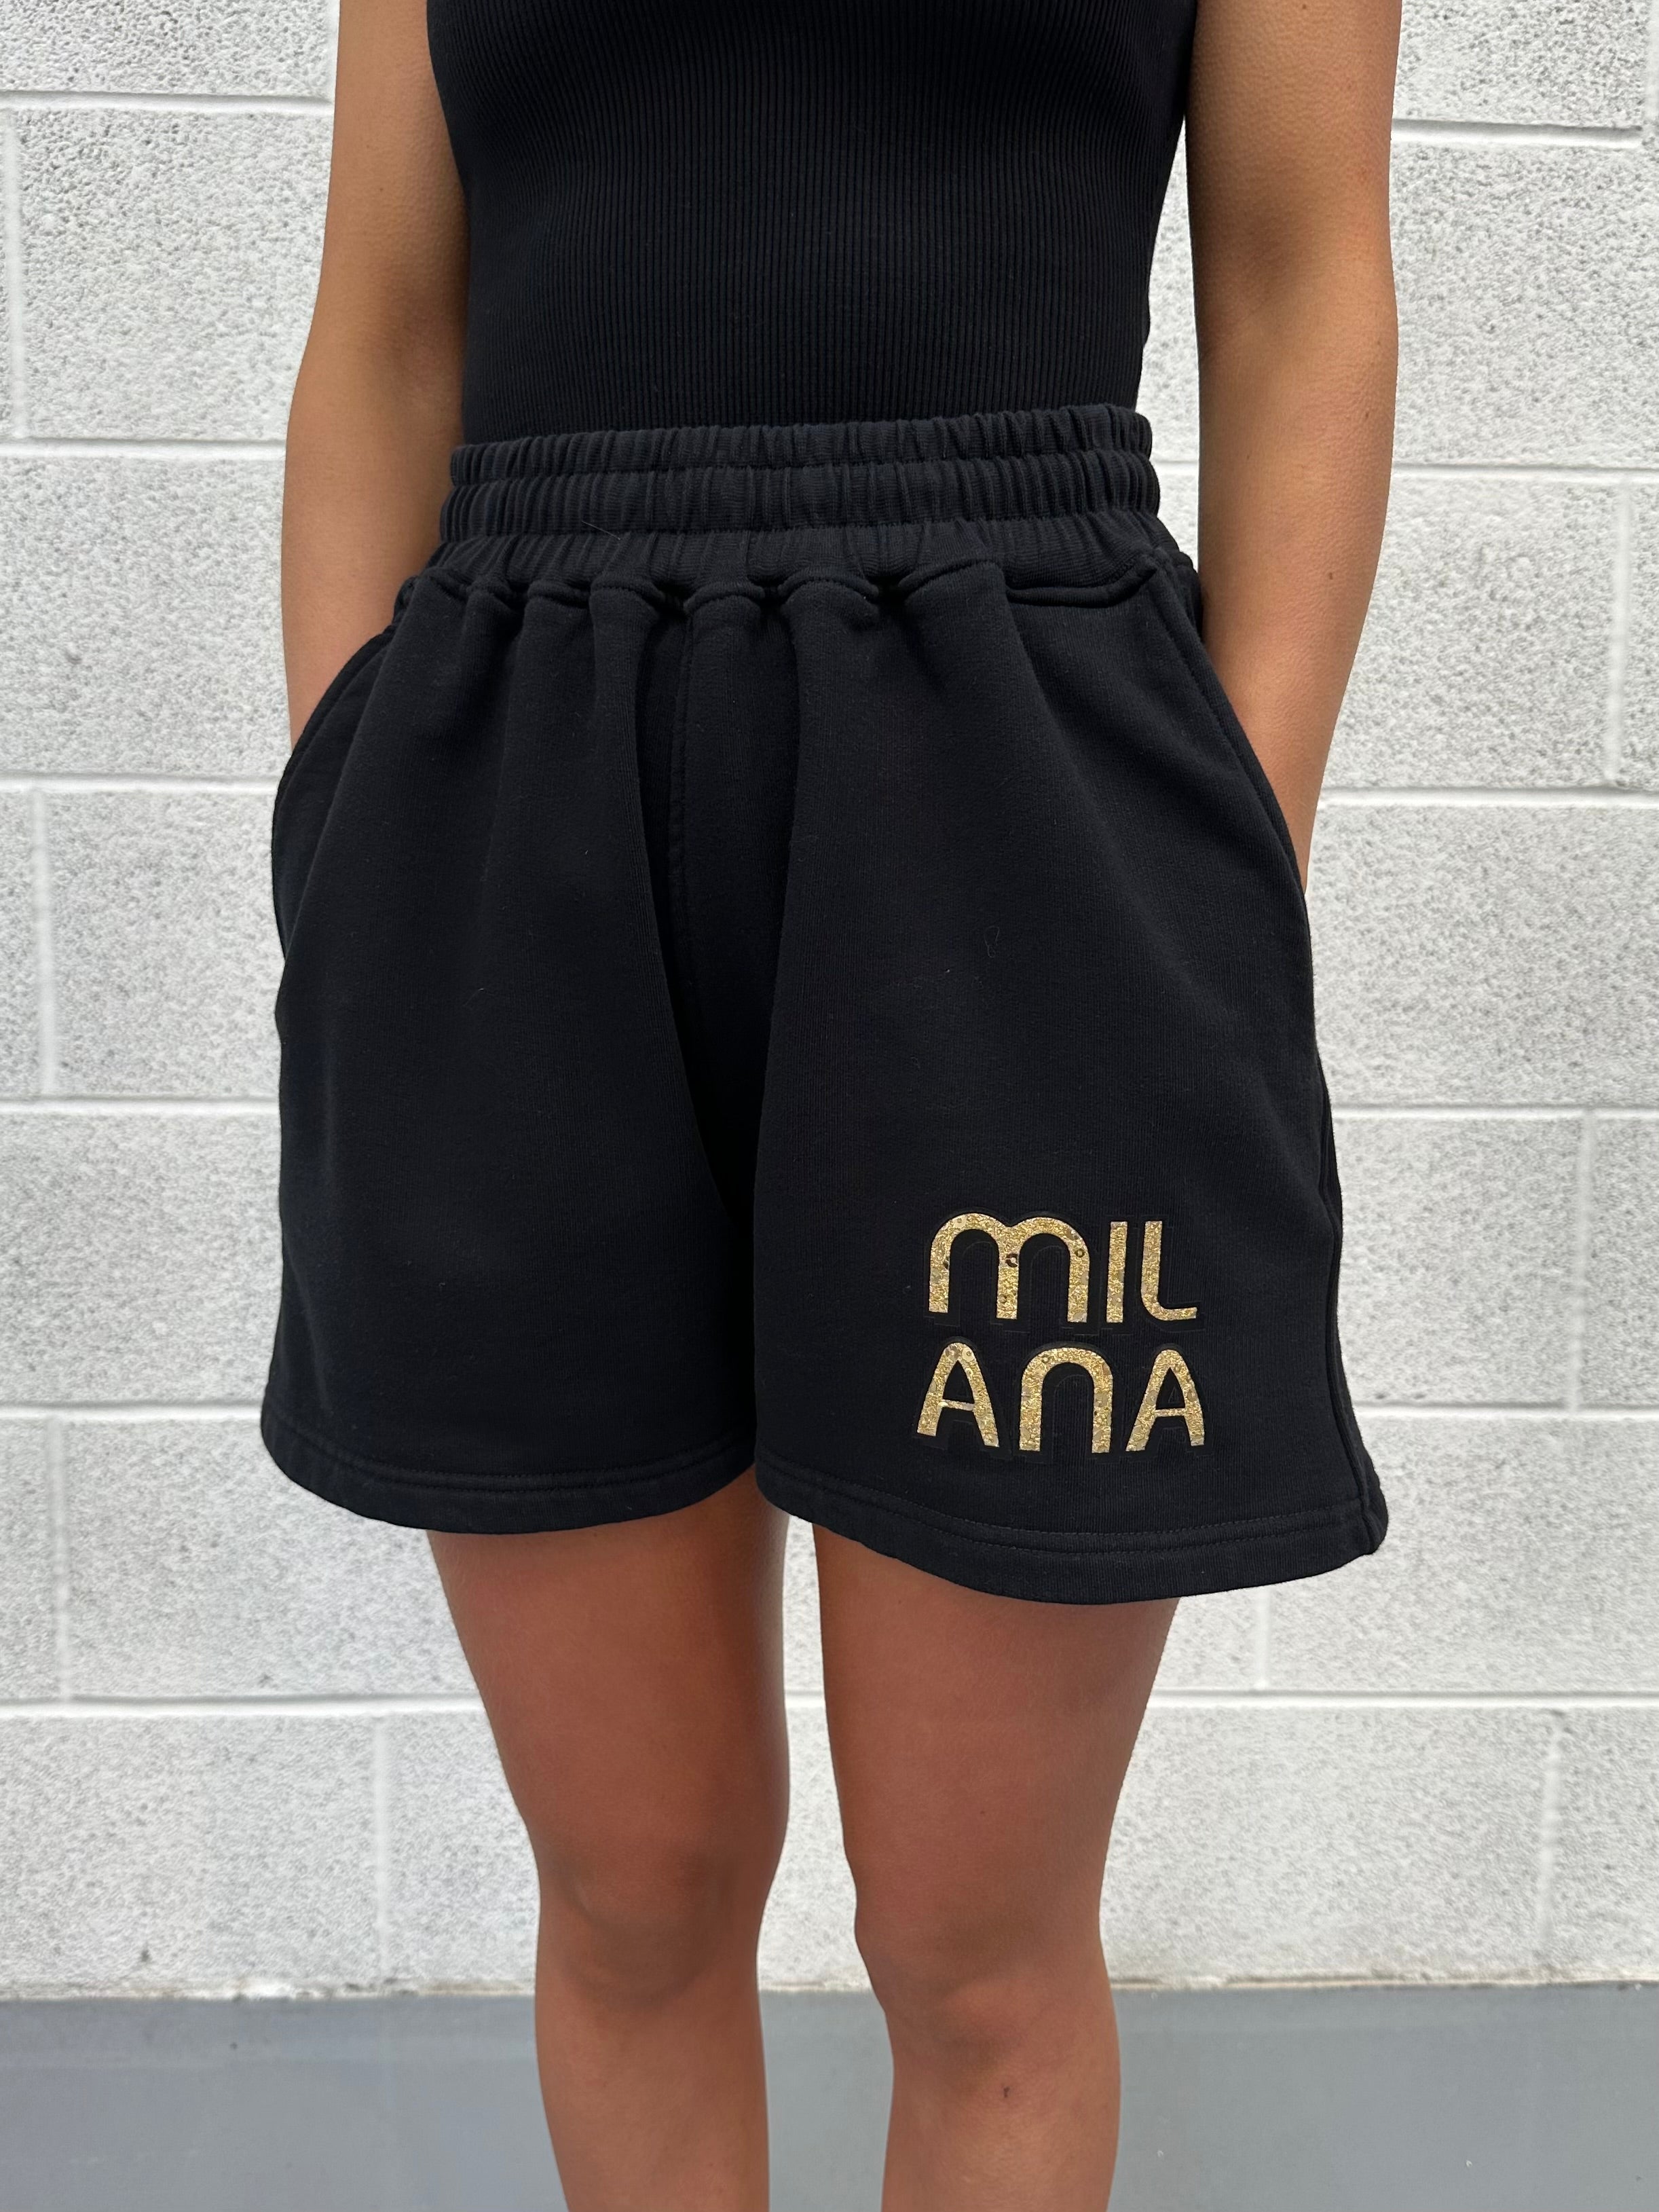 Black Embellished Mini Shorts.